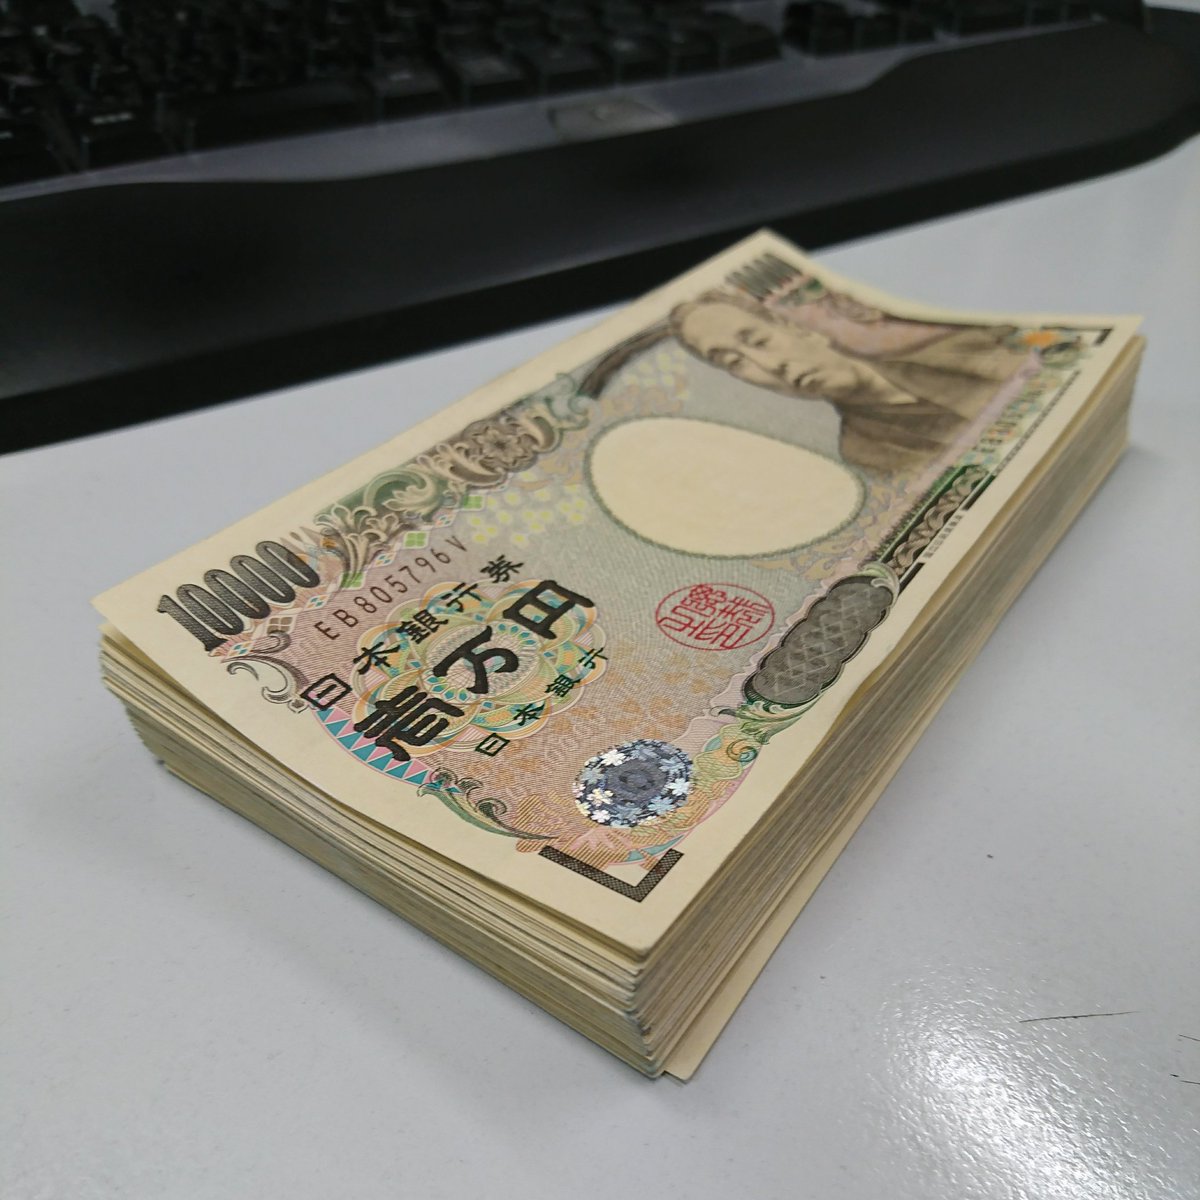 あきらてんちょー 500yen 銀行からおろしてすぐの100万円 T Co R3rrruoquk Twitter